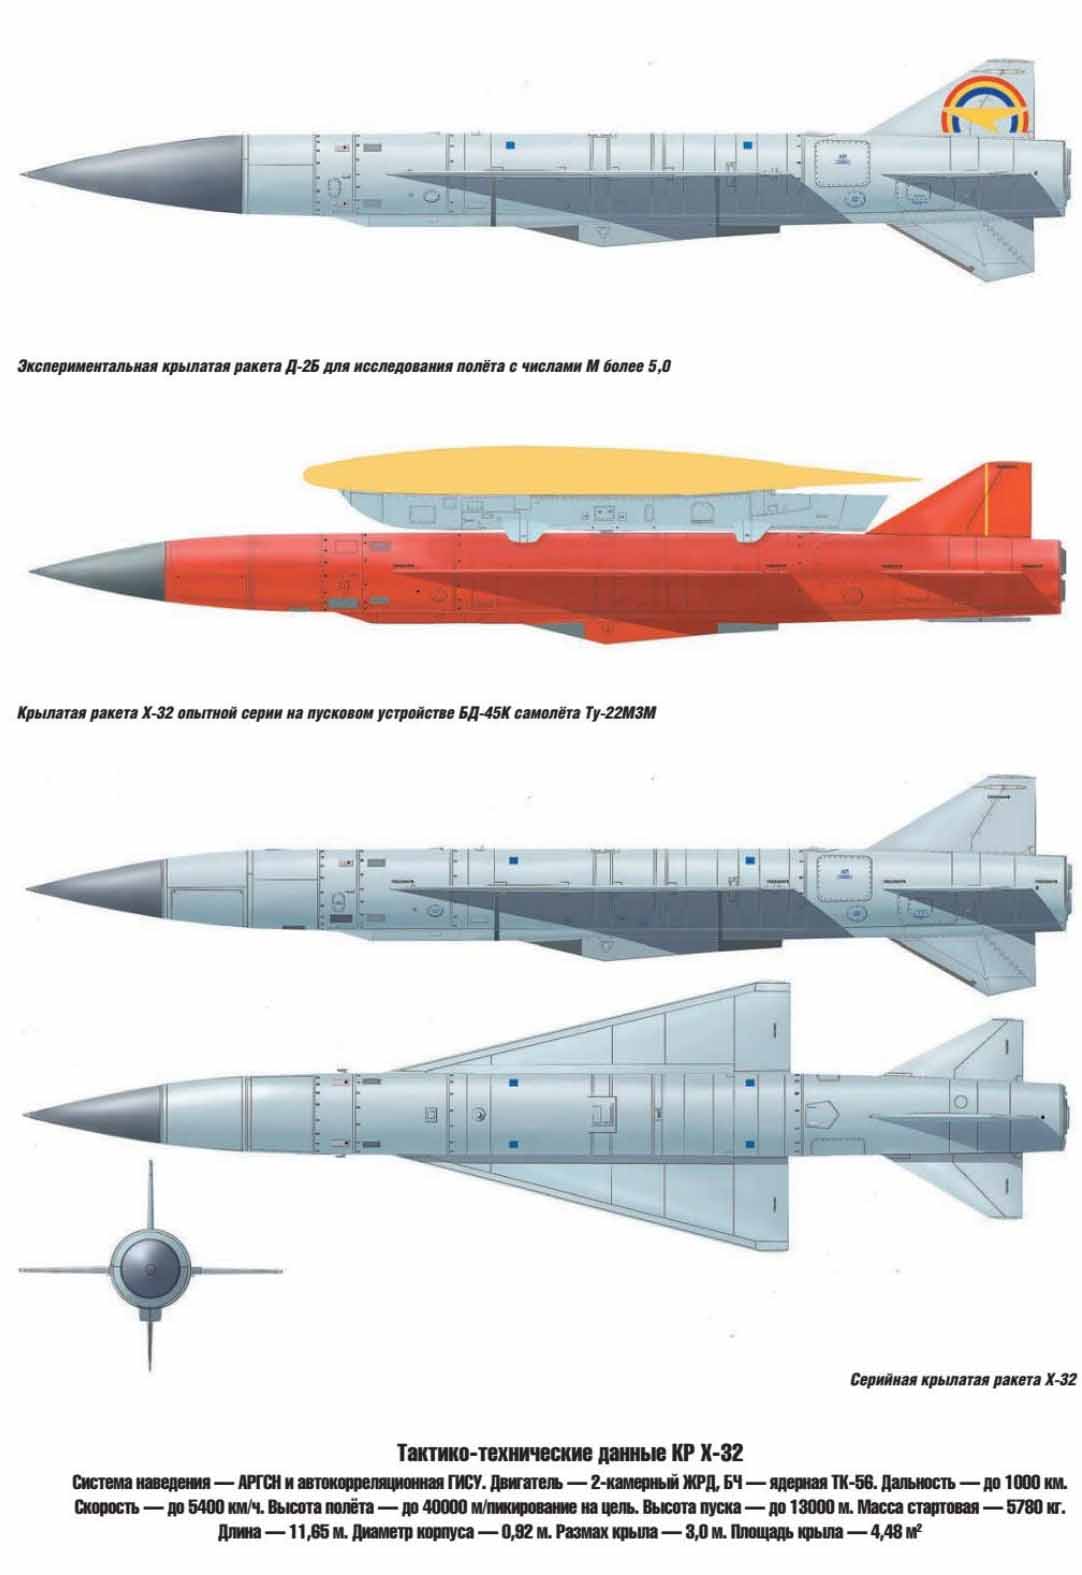 истребитель, Су, Су-30СМ, модернизация, Х-32, противокорабельная ракета, ракета, гиперзвук, гиперзвуковая ракета